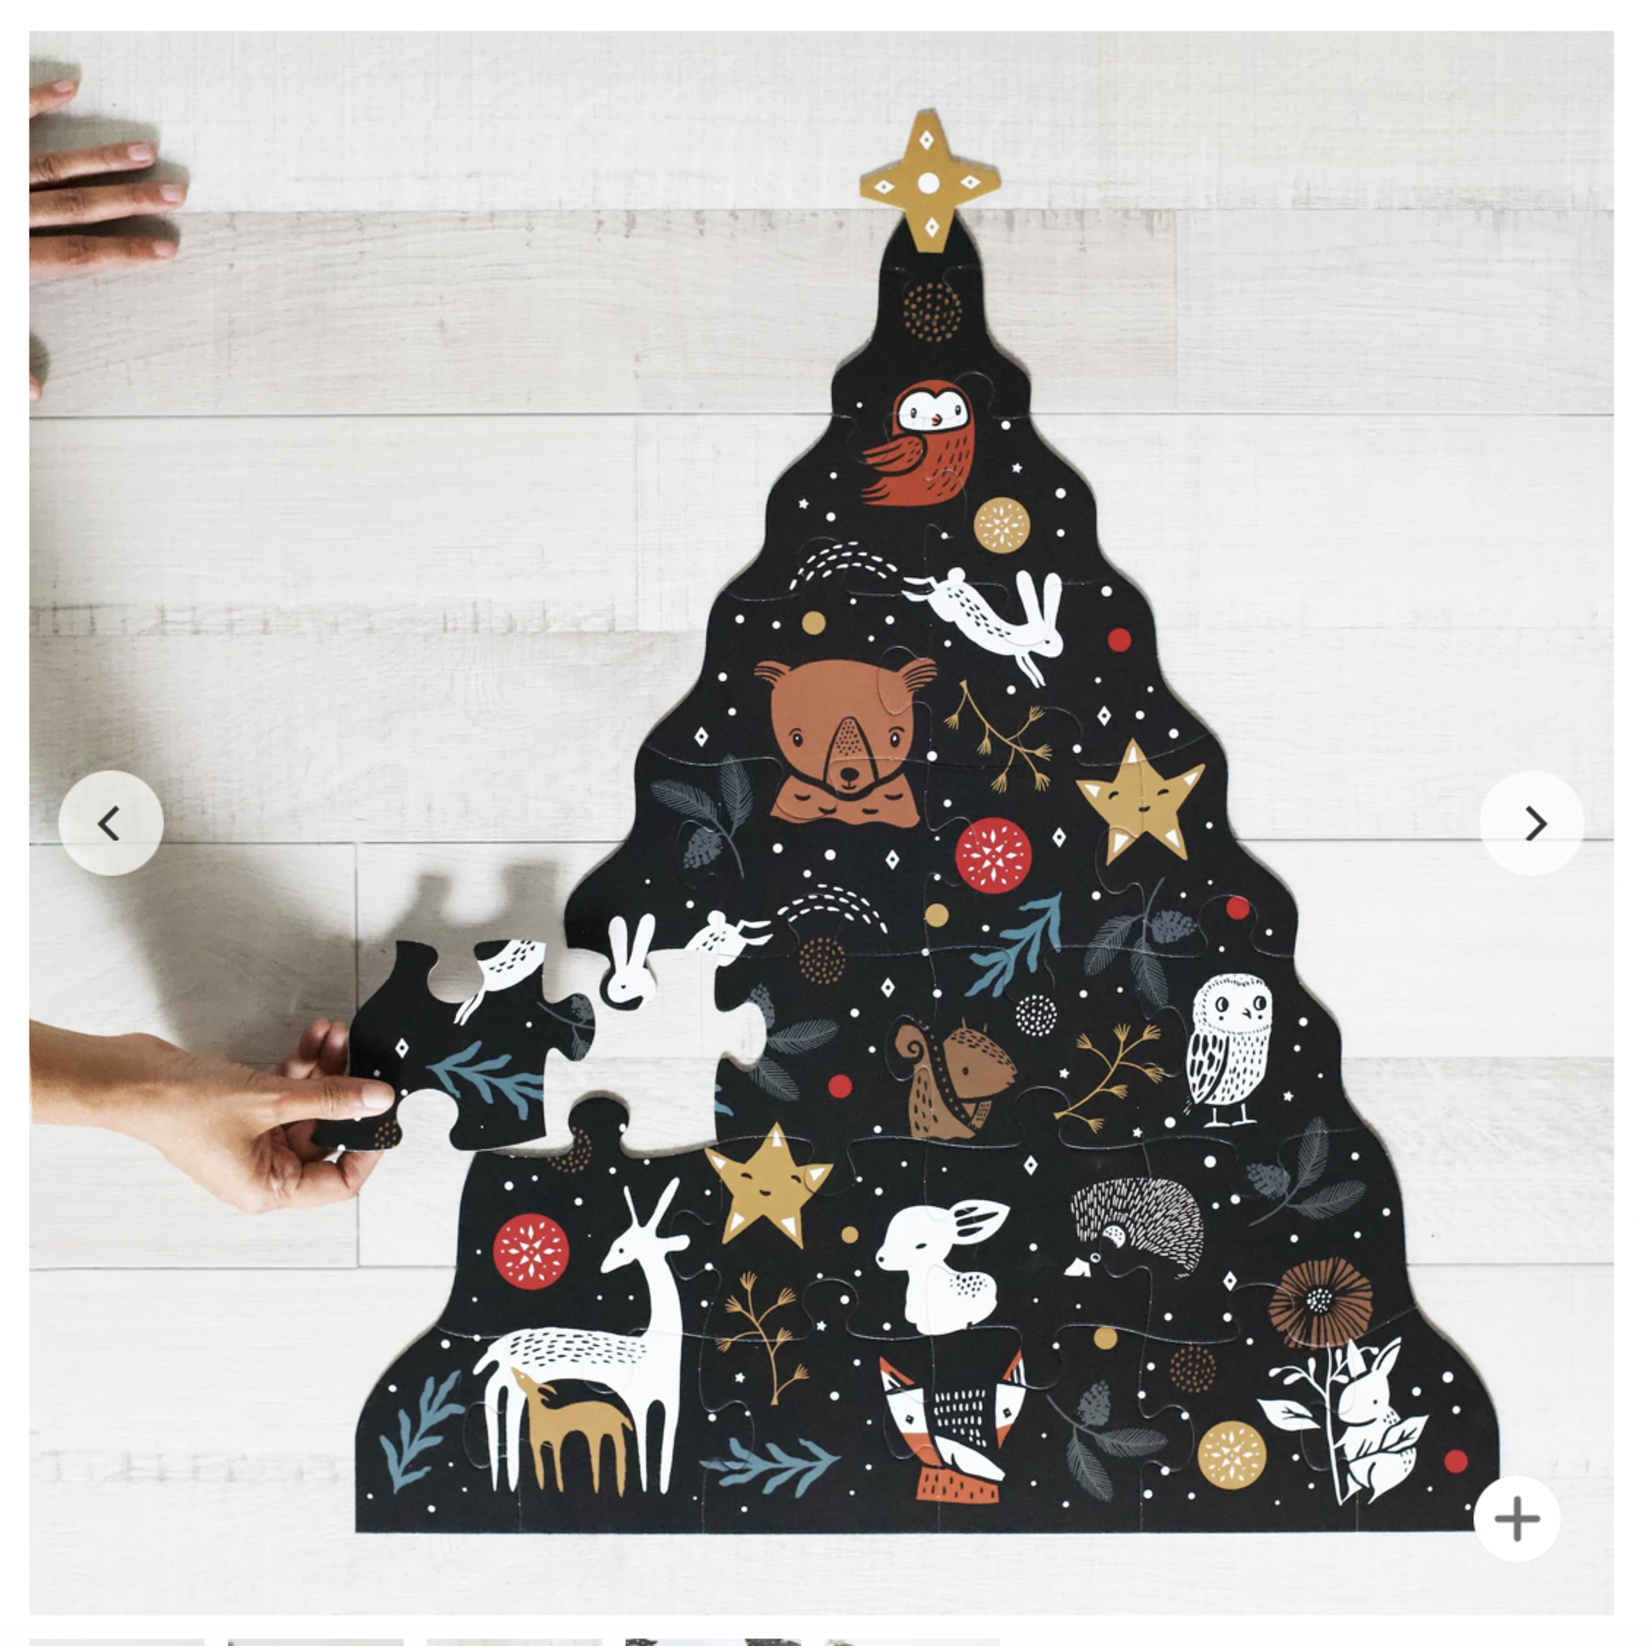 Wee Gallery Floor Puzzle - Christmas Tree